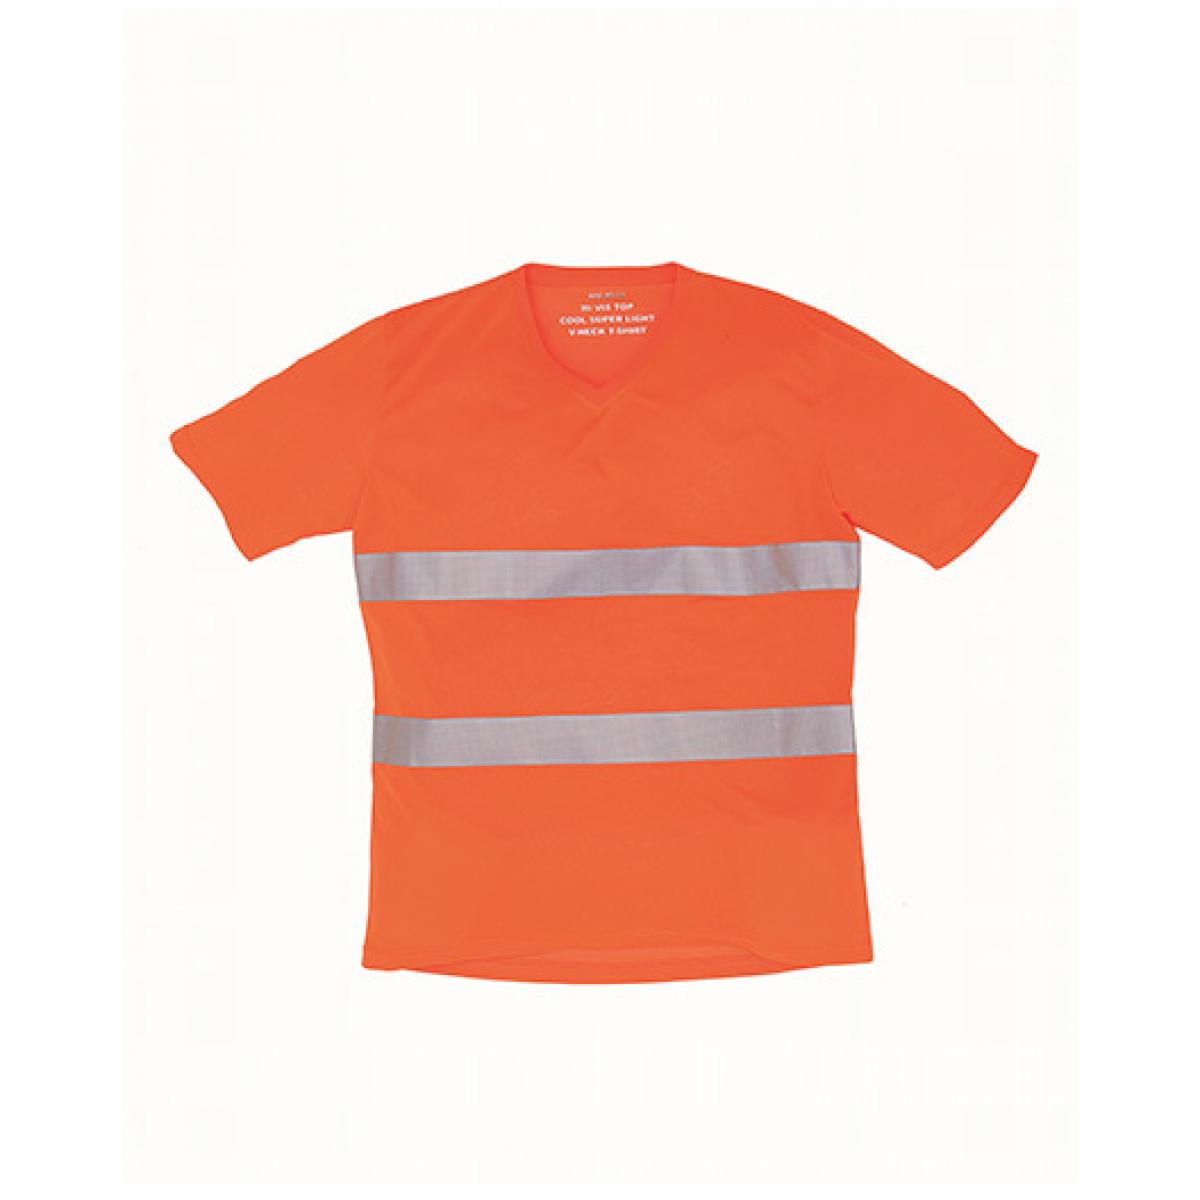 Hersteller: YOKO Herstellernummer: HVJ910 Artikelbezeichnung: Herren Hi Vis Top Cool Super Light V-Neck Arbeits T-Shirt Farbe: Hi-Vis Orange